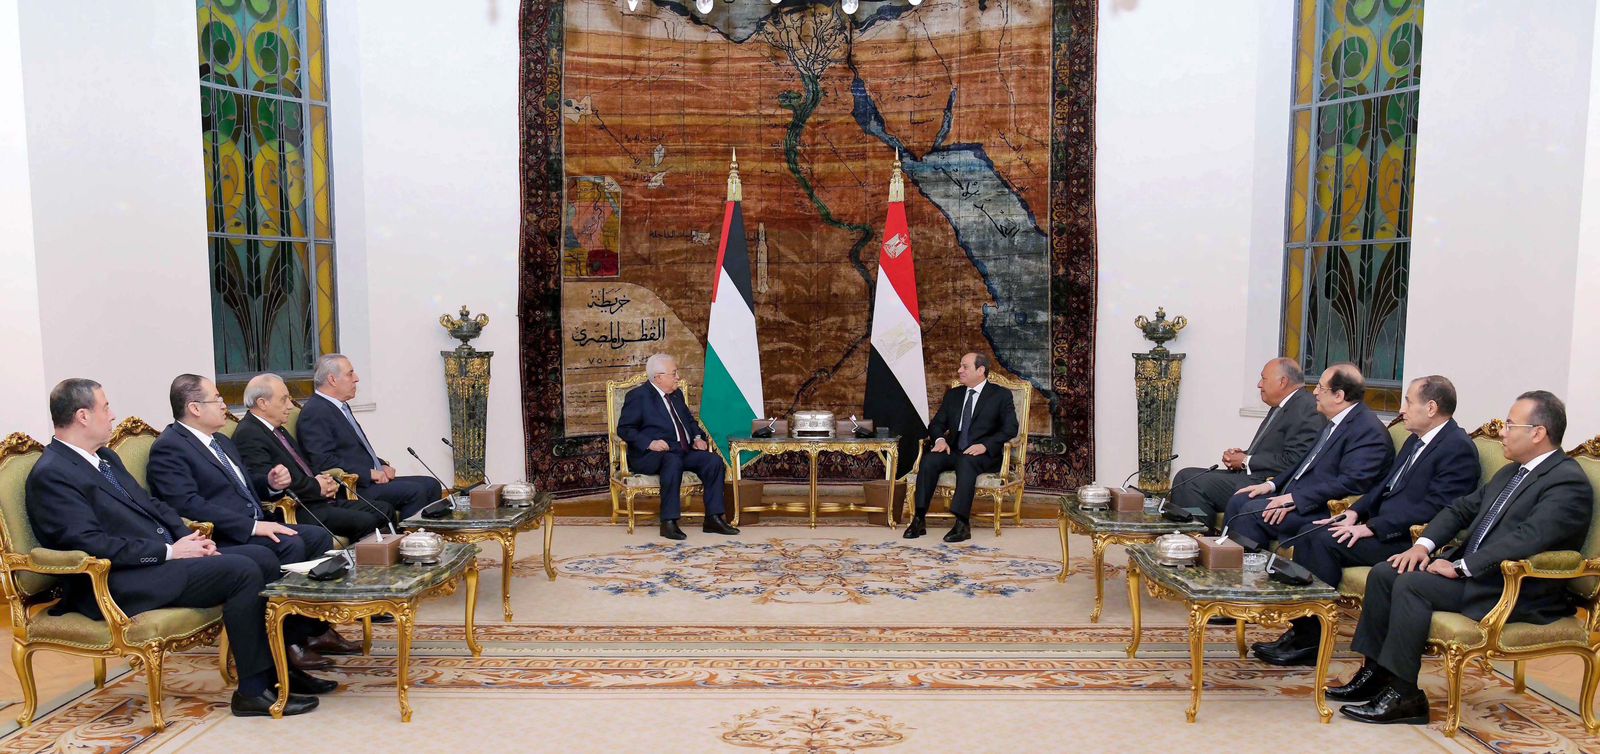 جلسة مباحثات موسعة بين الرئيس السيسي ونظيره الفلسطيني حول الأوضاع في غزة